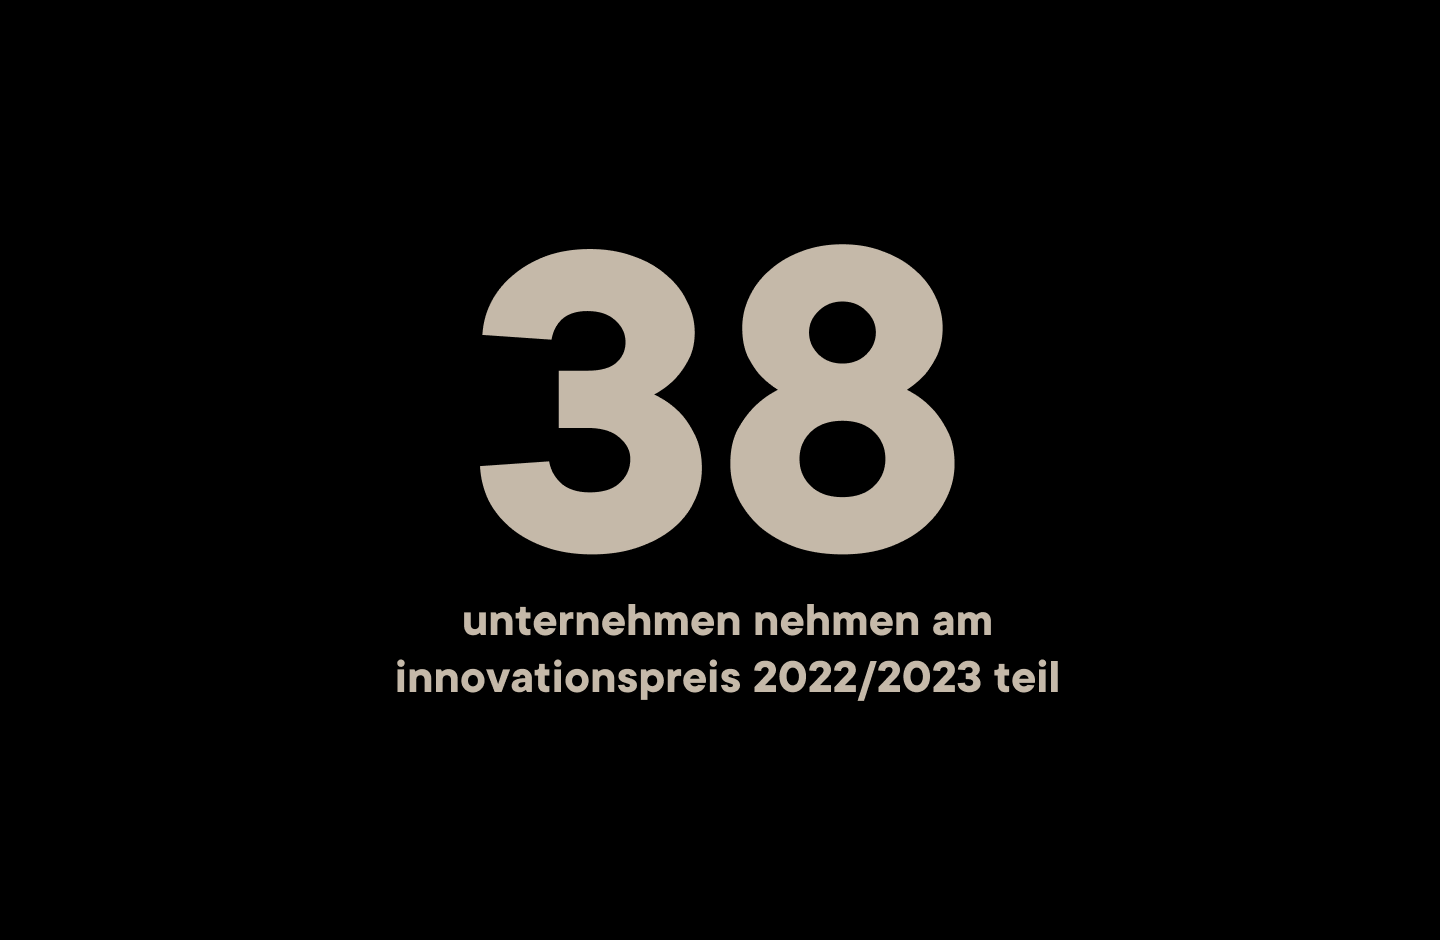 38 Unternehmen nehmen am Innovationspreis 2022/2023 teil.